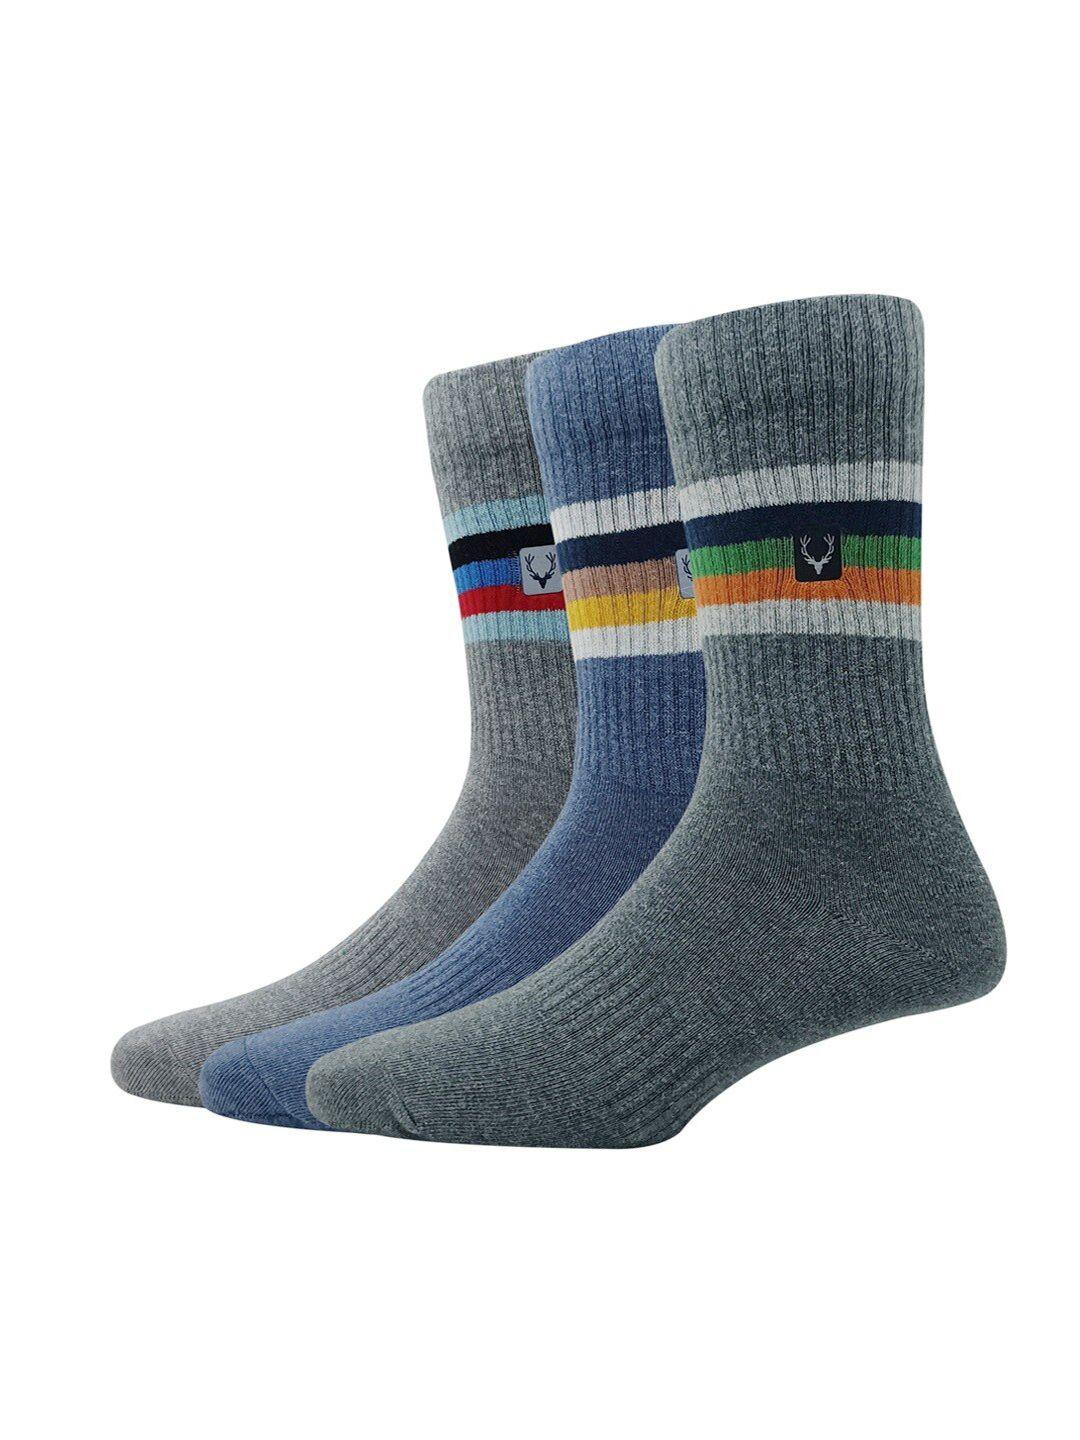 allen solly men striped pack of 3 full-length cotton socks